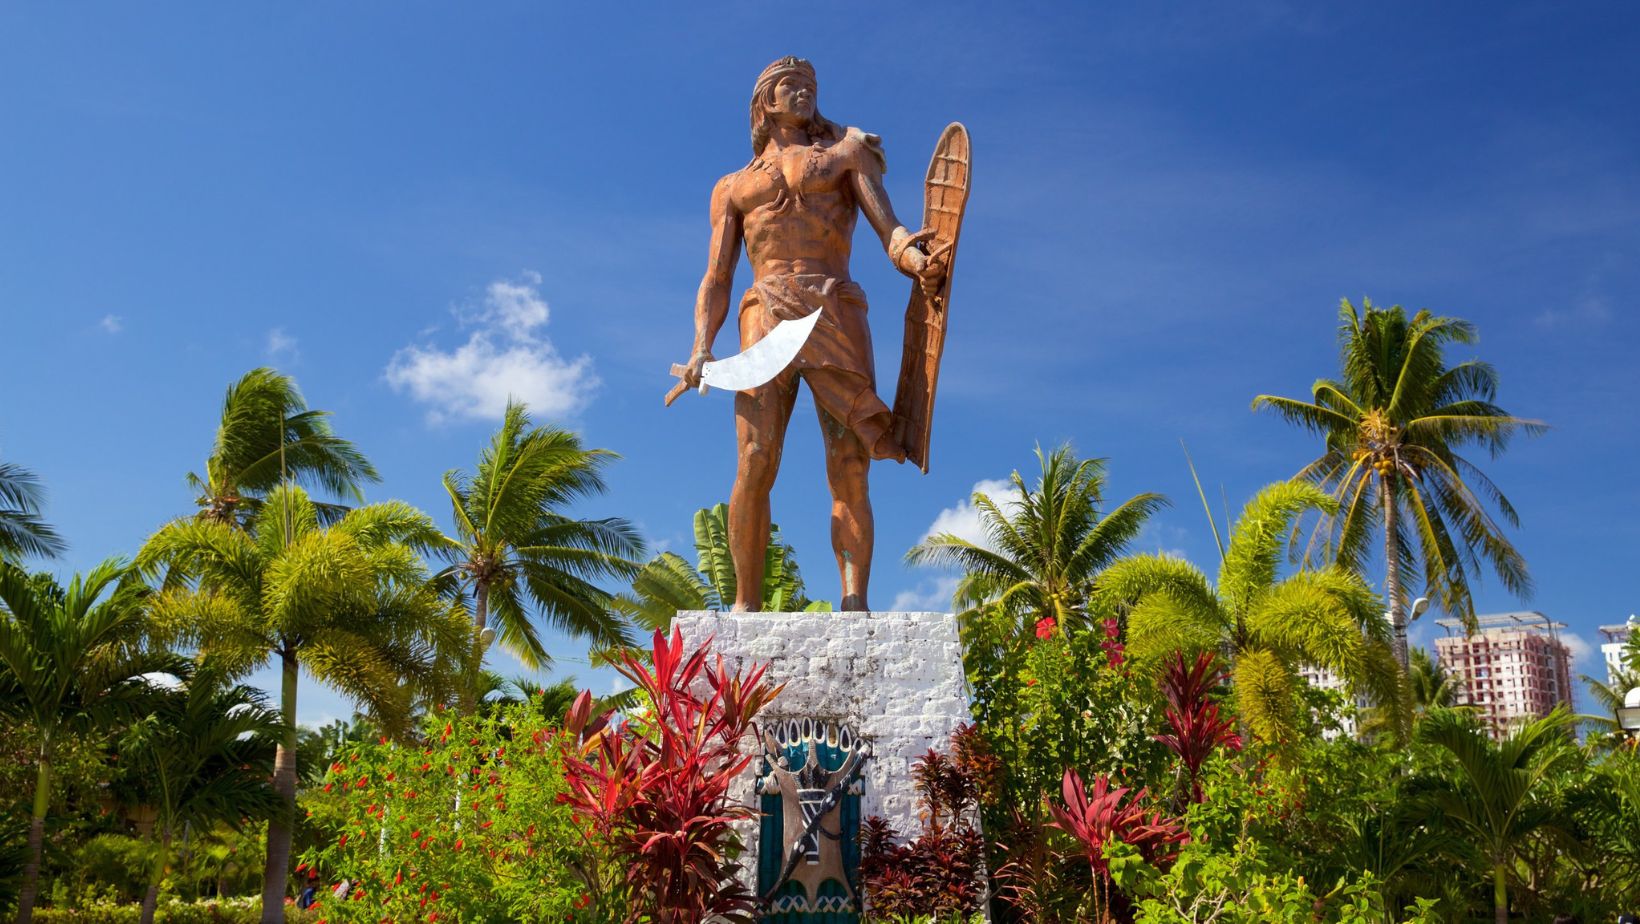 Chief Lapu-Lapu - Warrior and Hero of the Philippines